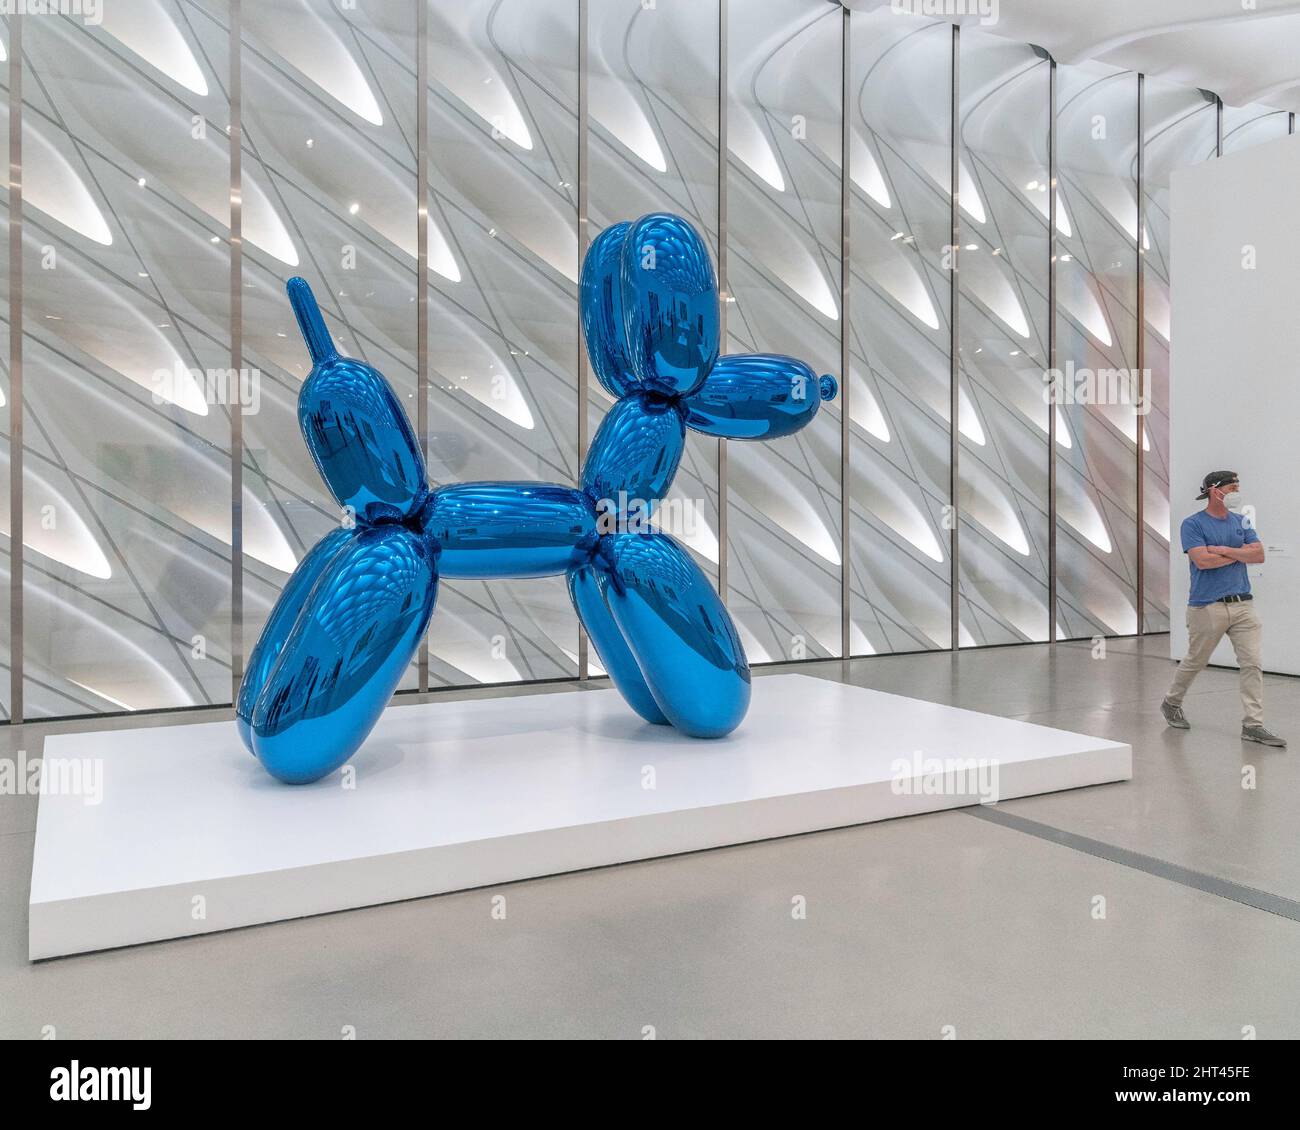 Los Angeles, CA, USA - 25 febbraio 2022: La scultura “Balloon Dog” dell'artista Jeff Koons al Broad Museum nel centro di Los Angeles, CA. Foto Stock